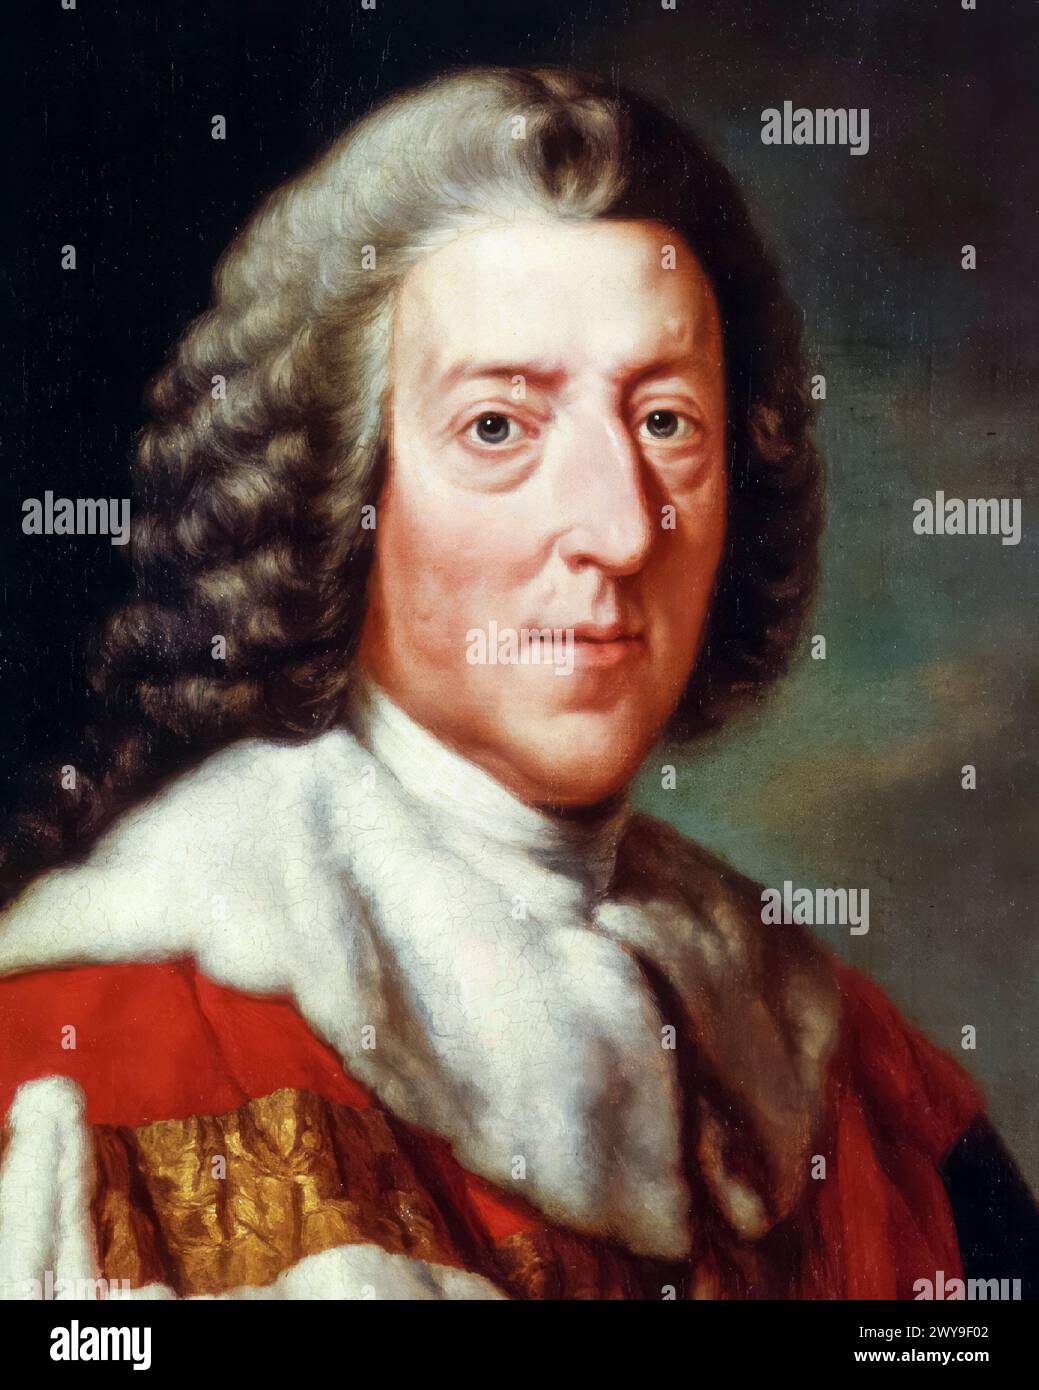 William Pitt il Vecchio, i conte di Chatham (1708-1778), politico Whig e primo ministro della Gran Bretagna 1766-1768, ritratto a olio su tela dopo Richard Brompton, 1772 Foto Stock